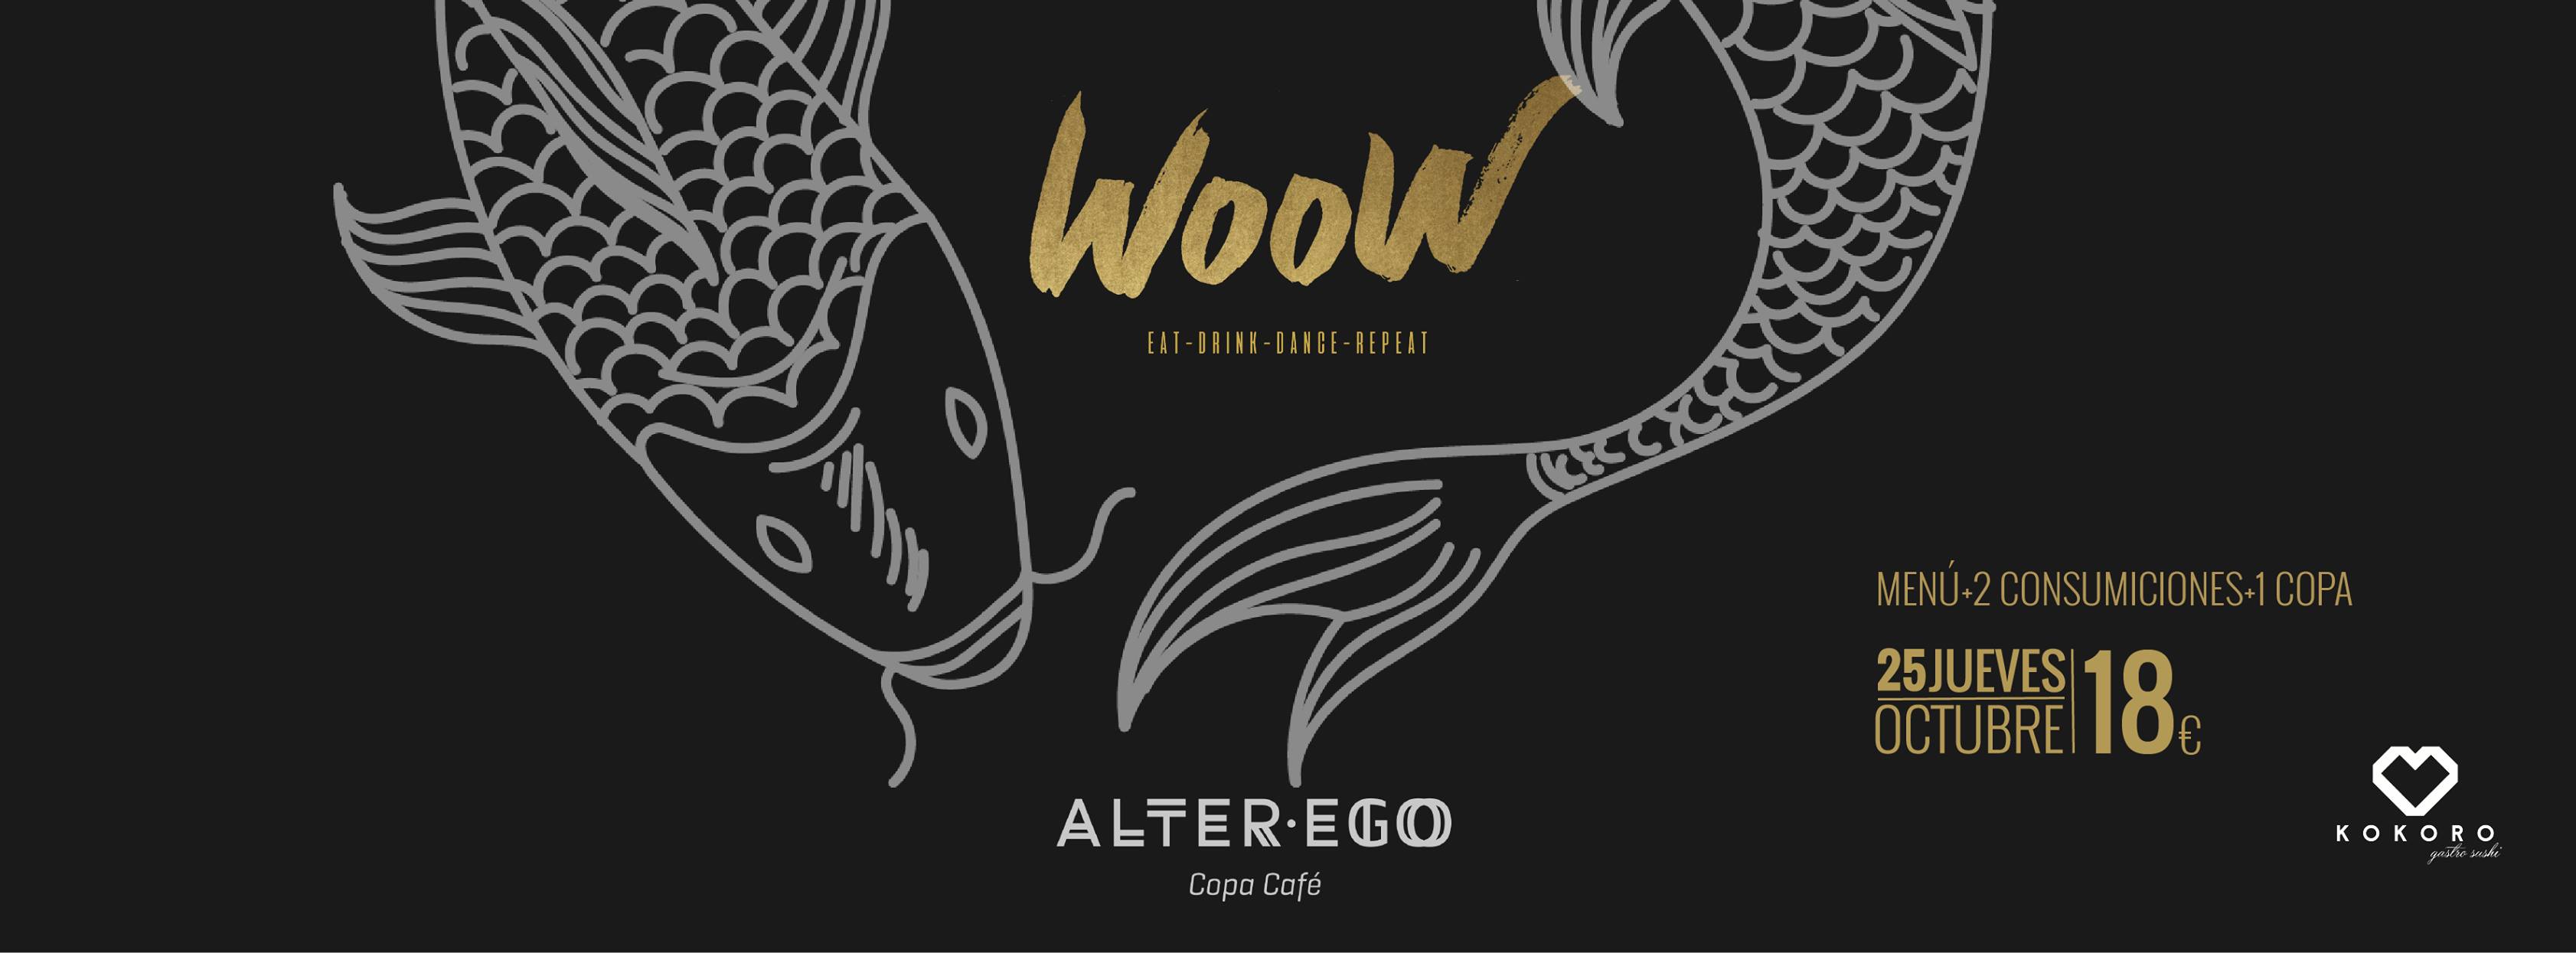 WooW: Gastronomía, música y arte